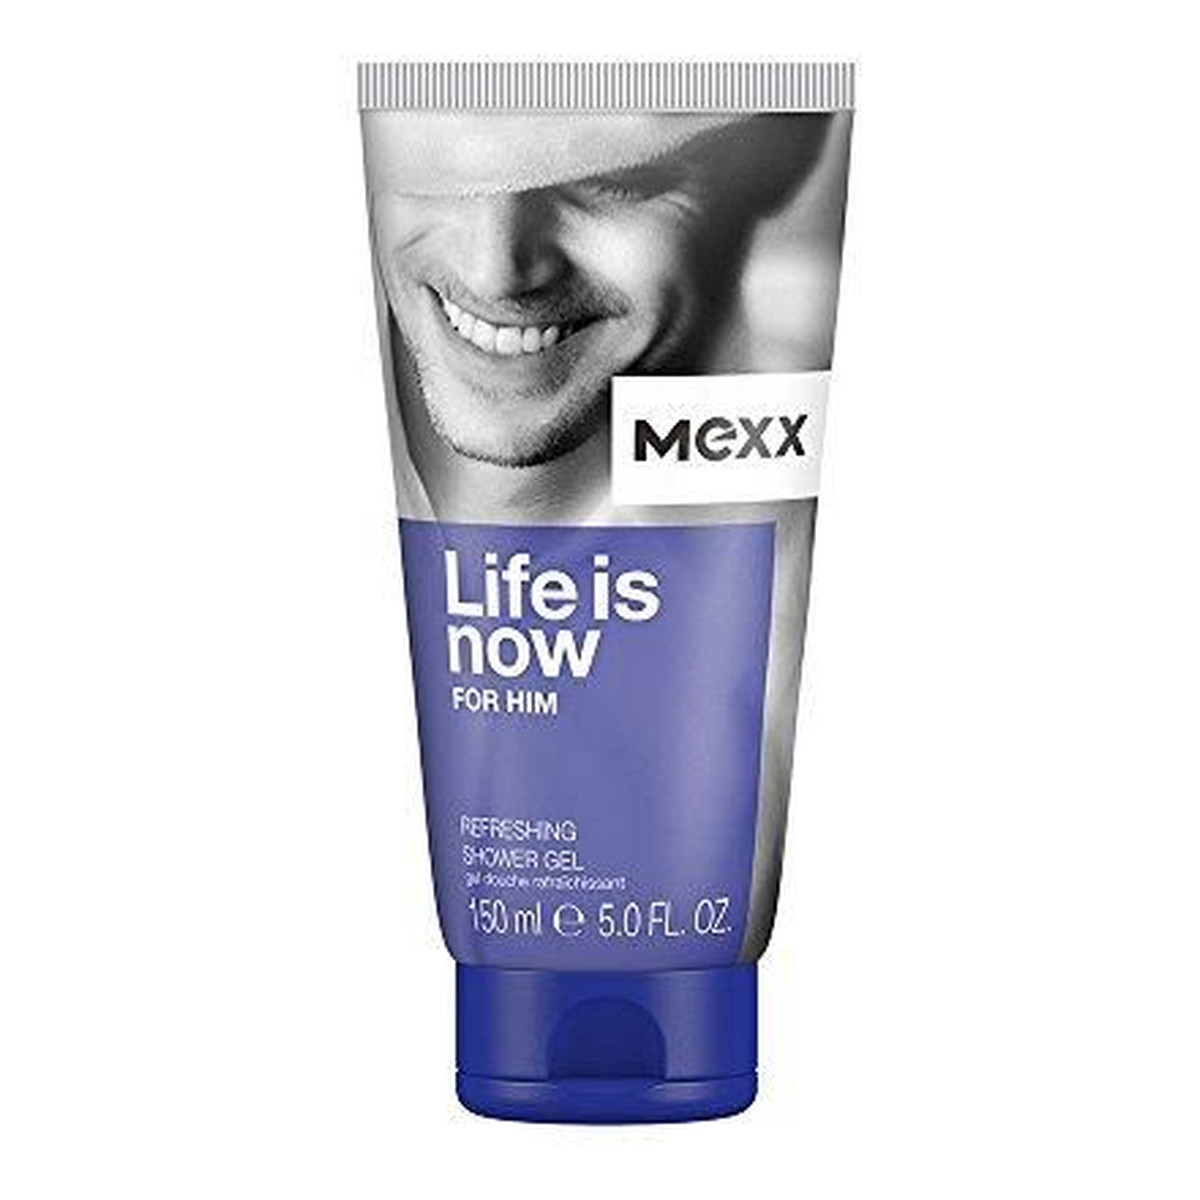 Mexx Life is now for him żel pod prysznic 150ml